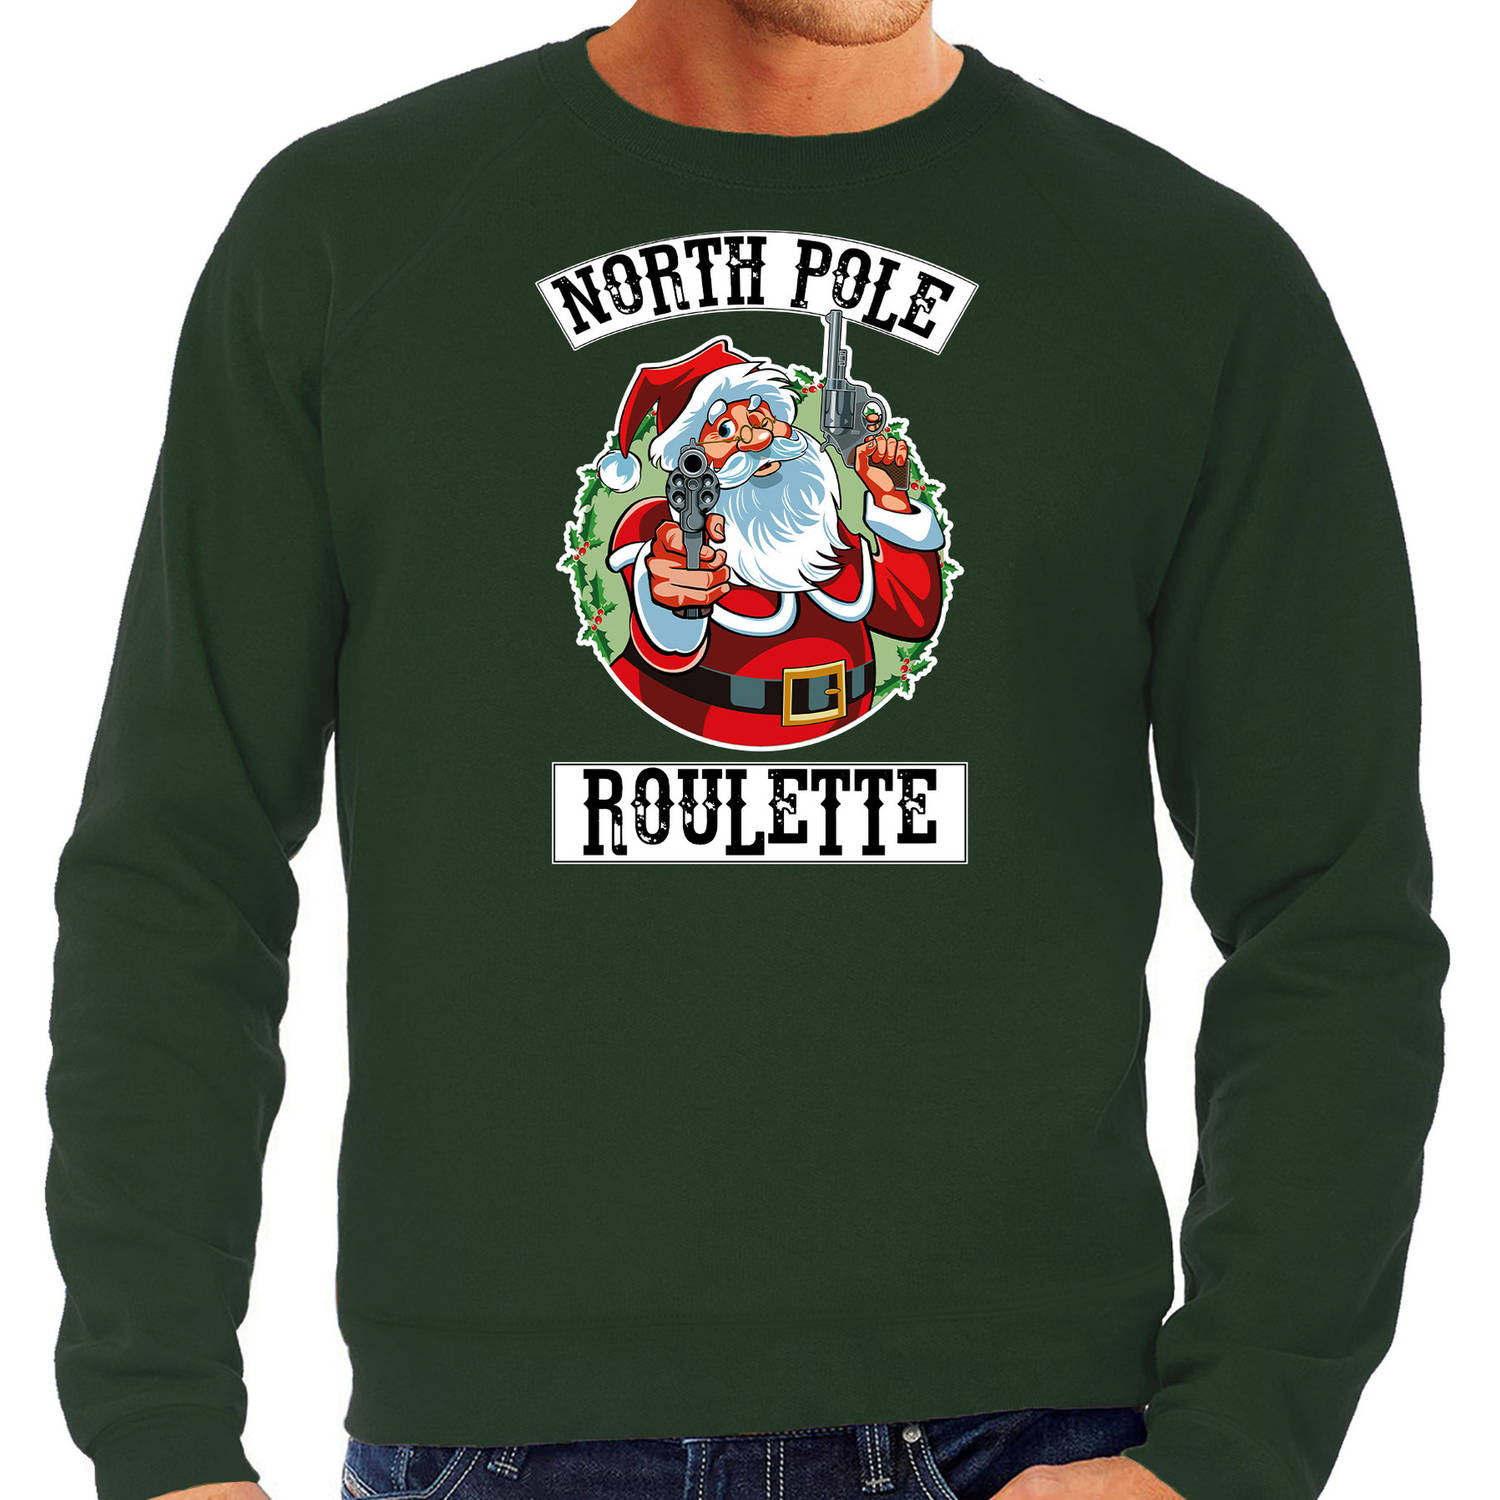 Groene Kersttrui / Kerstkleding Northpole roulette voor heren XL - kerst truien